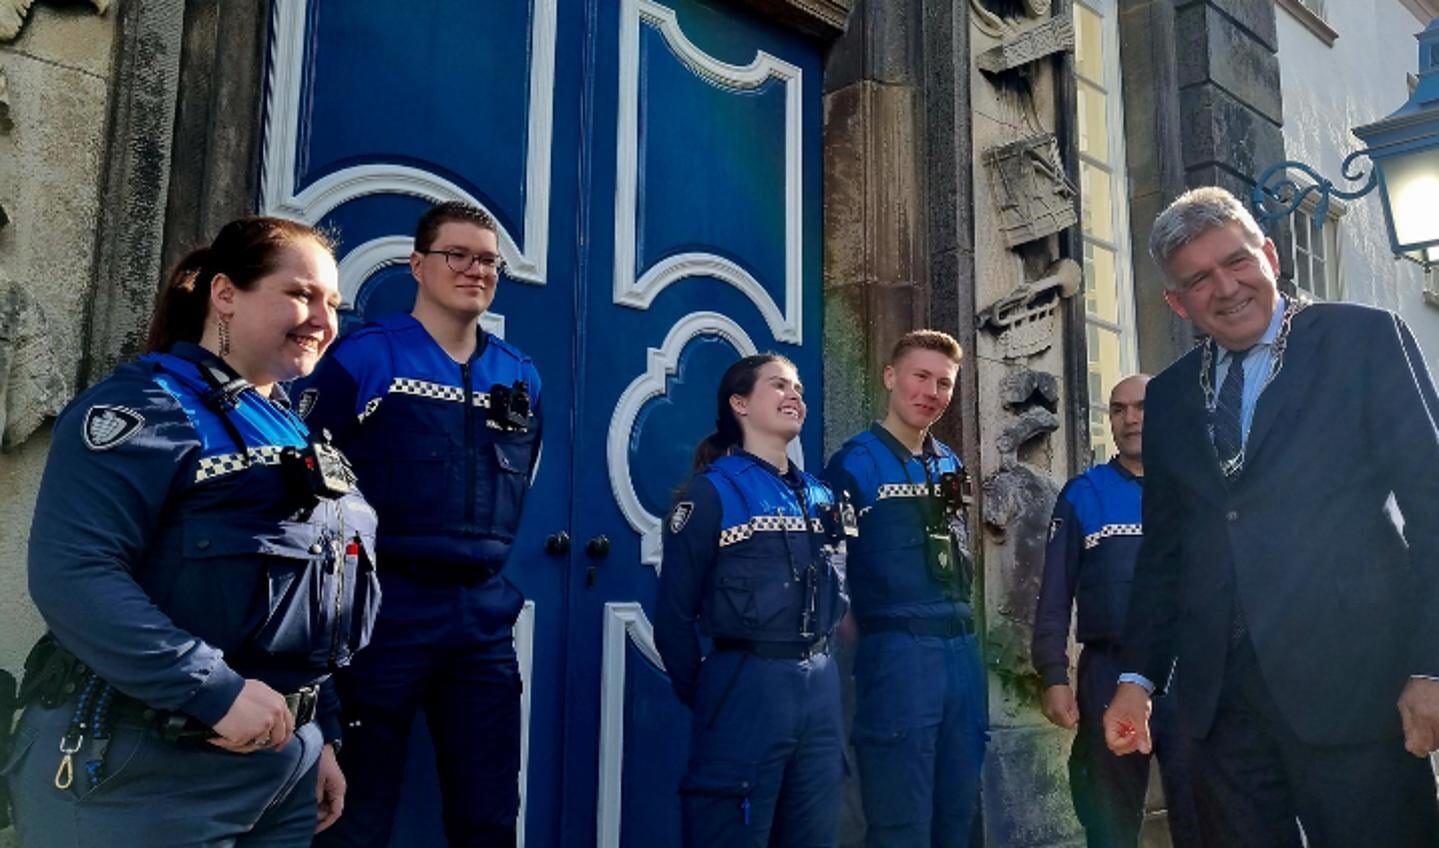 Burgemeester Wimar Jaeger (r) met een aantal handhavers die een bodycam dragen. Foto: gemeente Zutphen